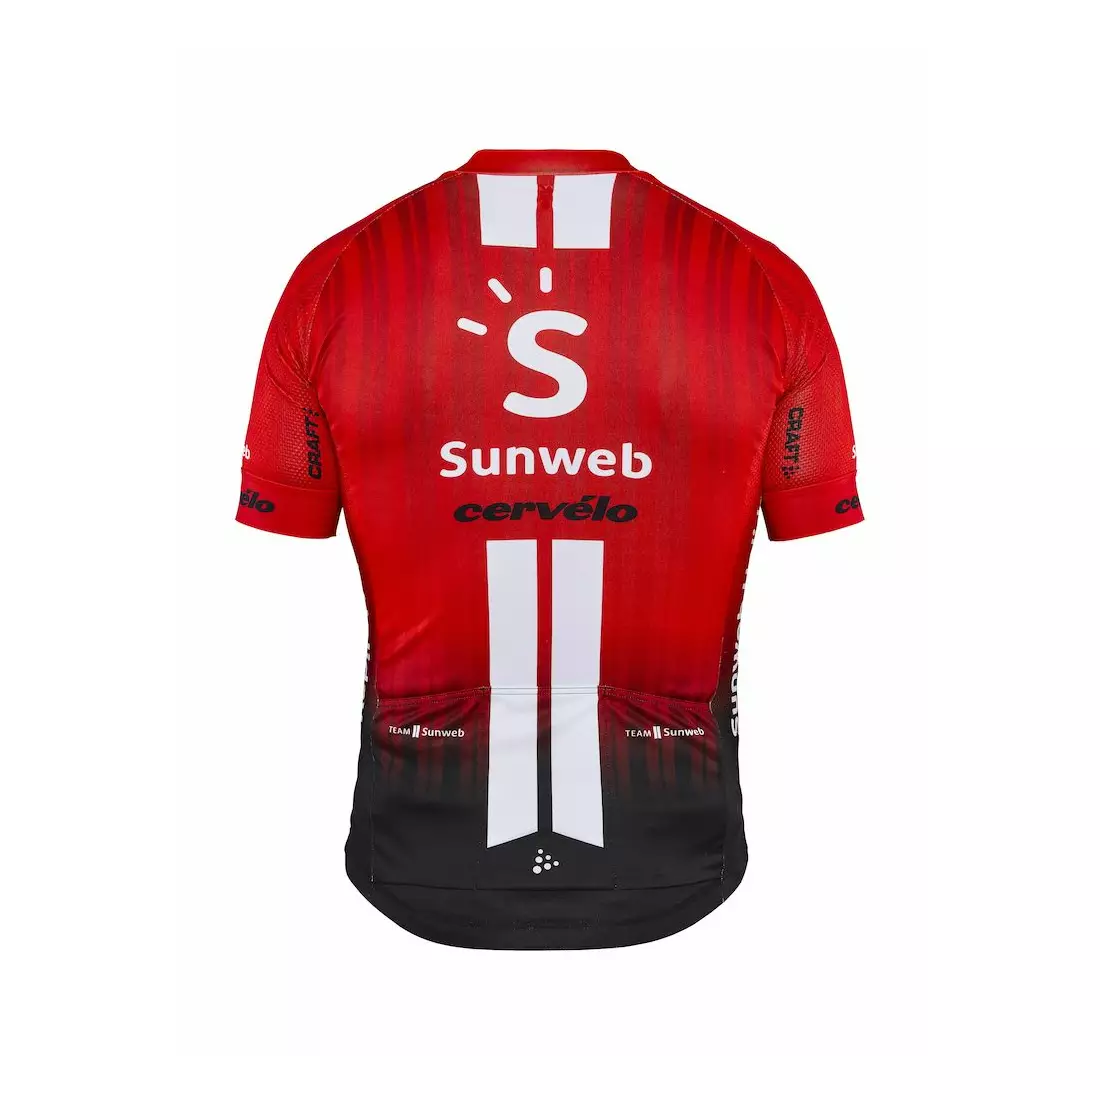 CRAFT SUNWEB 2019 replica tricou de ciclism 1908208-426000